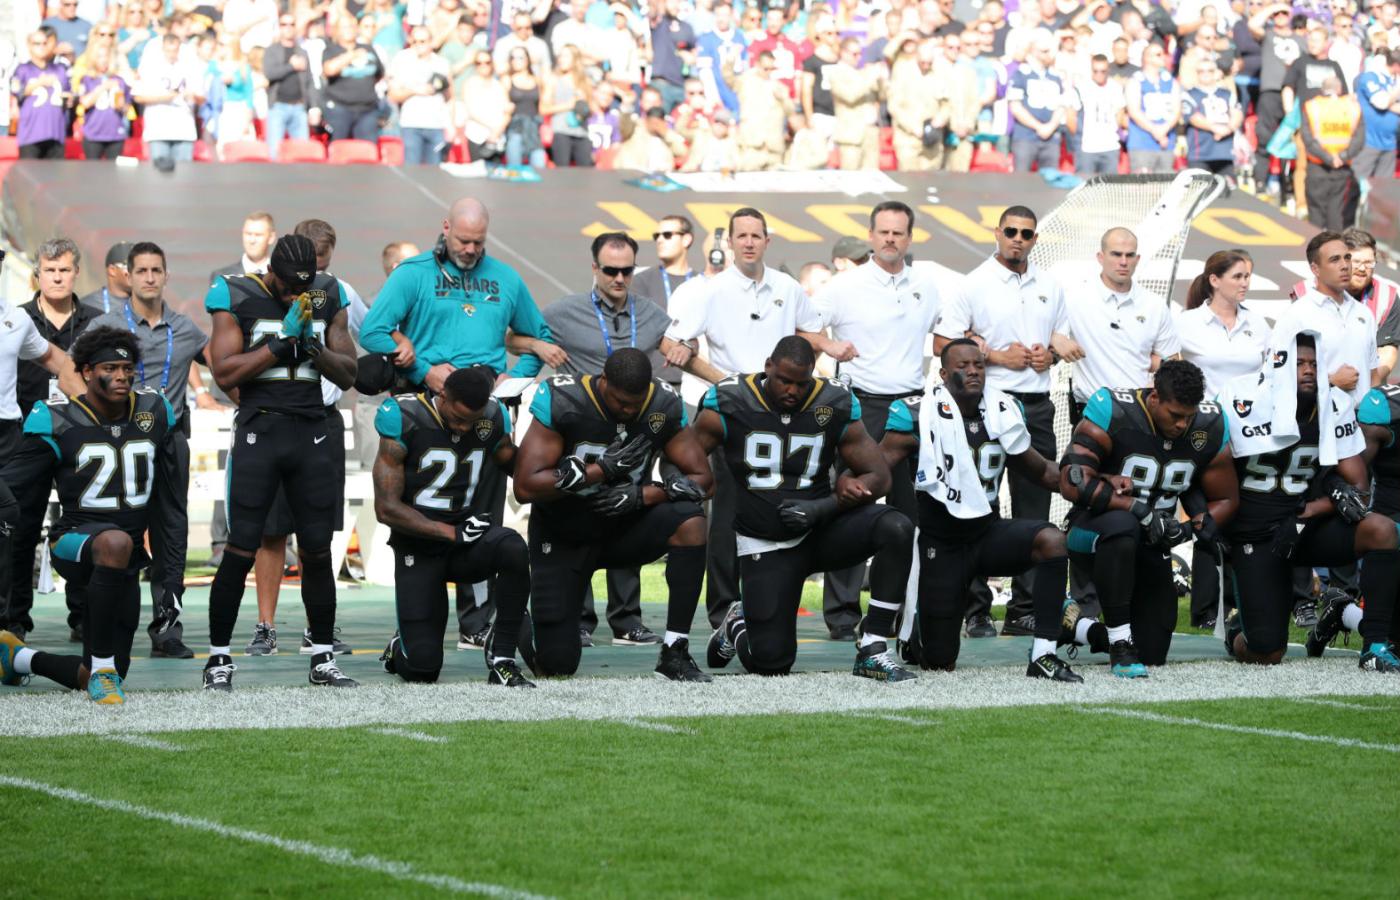 Futboliści solidaryzują się z Afroamerykanami w Stanach Zjednoczonych.